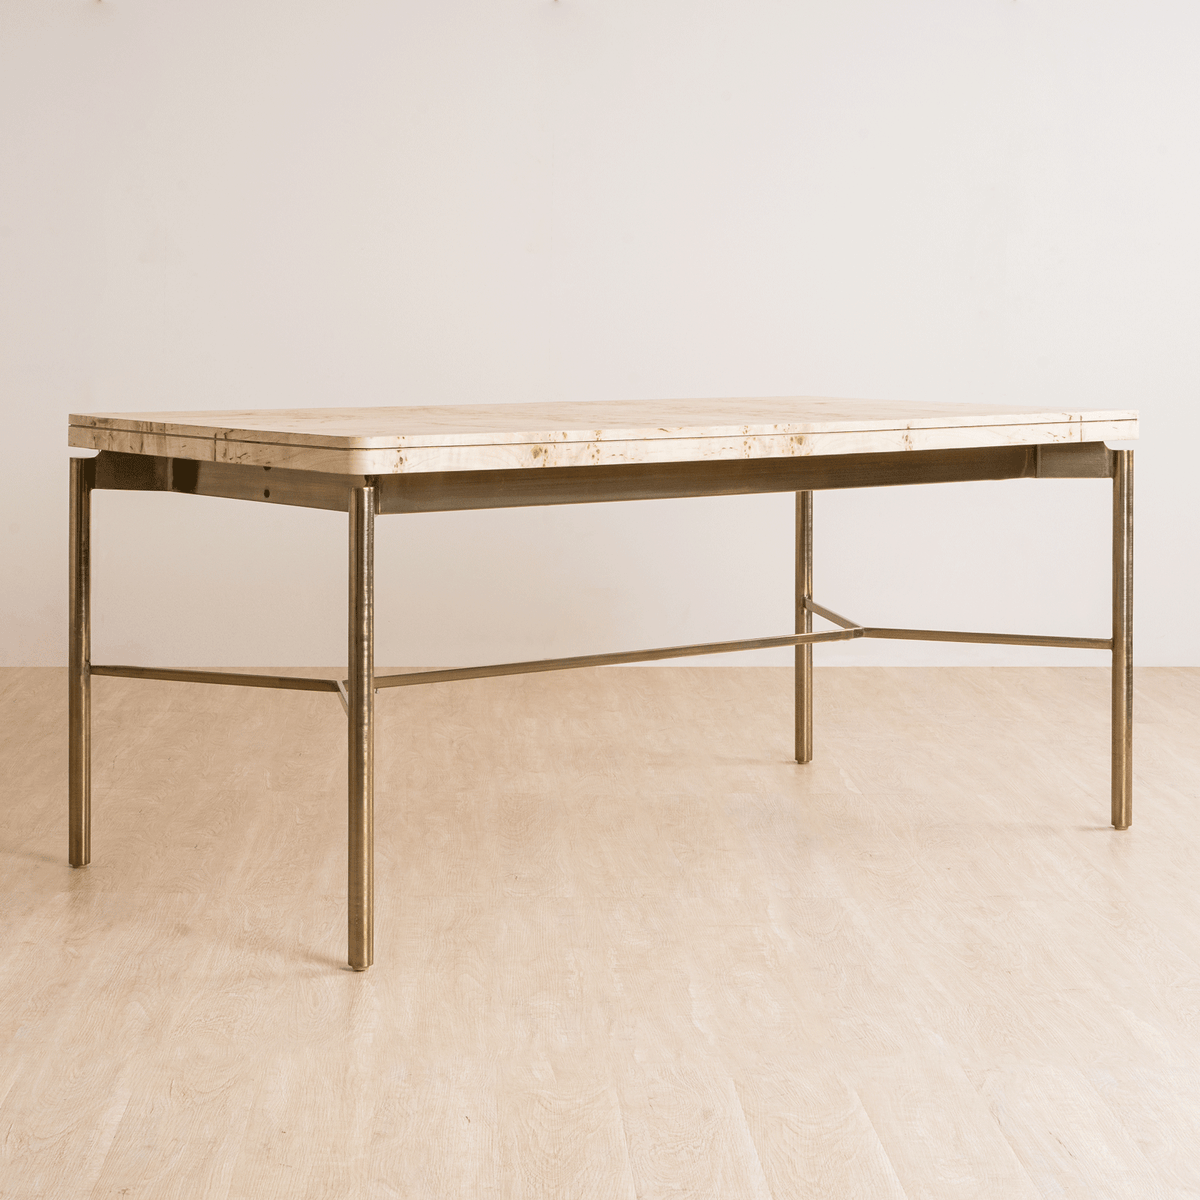 dining table. dining table design. dining table 6 seater.